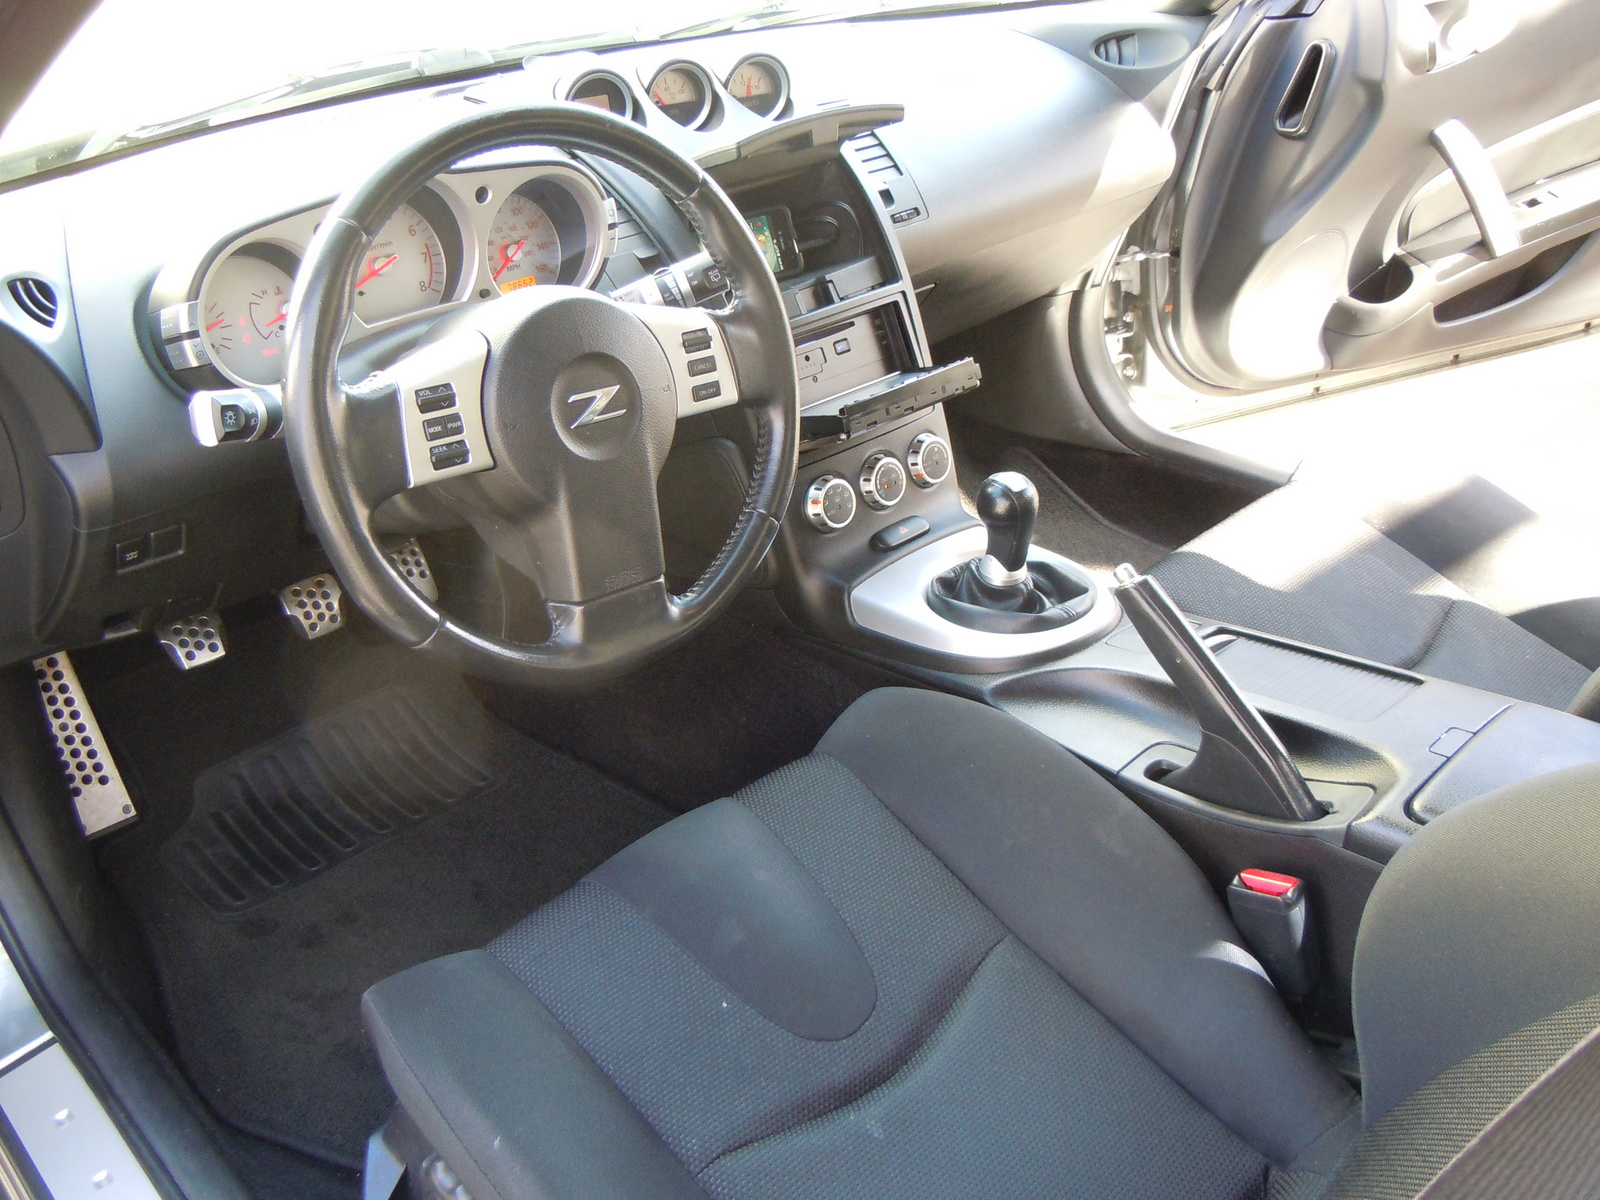 2006 Nissan 350z interior photos